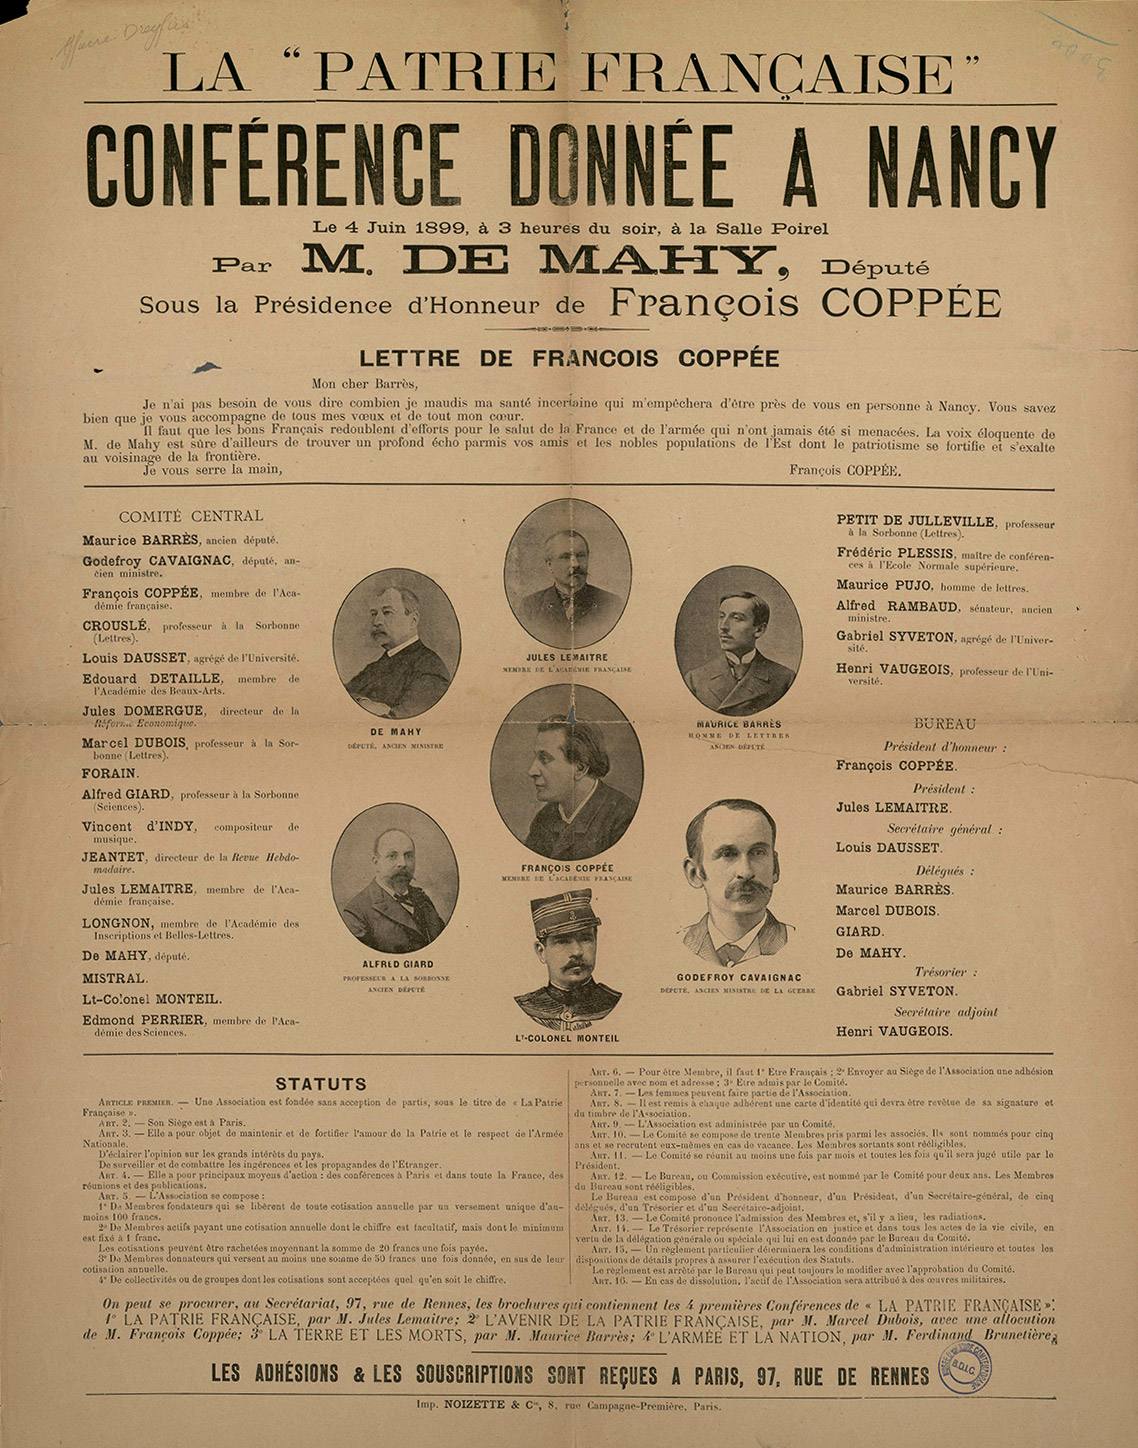 La patrie française, affiche, 1899